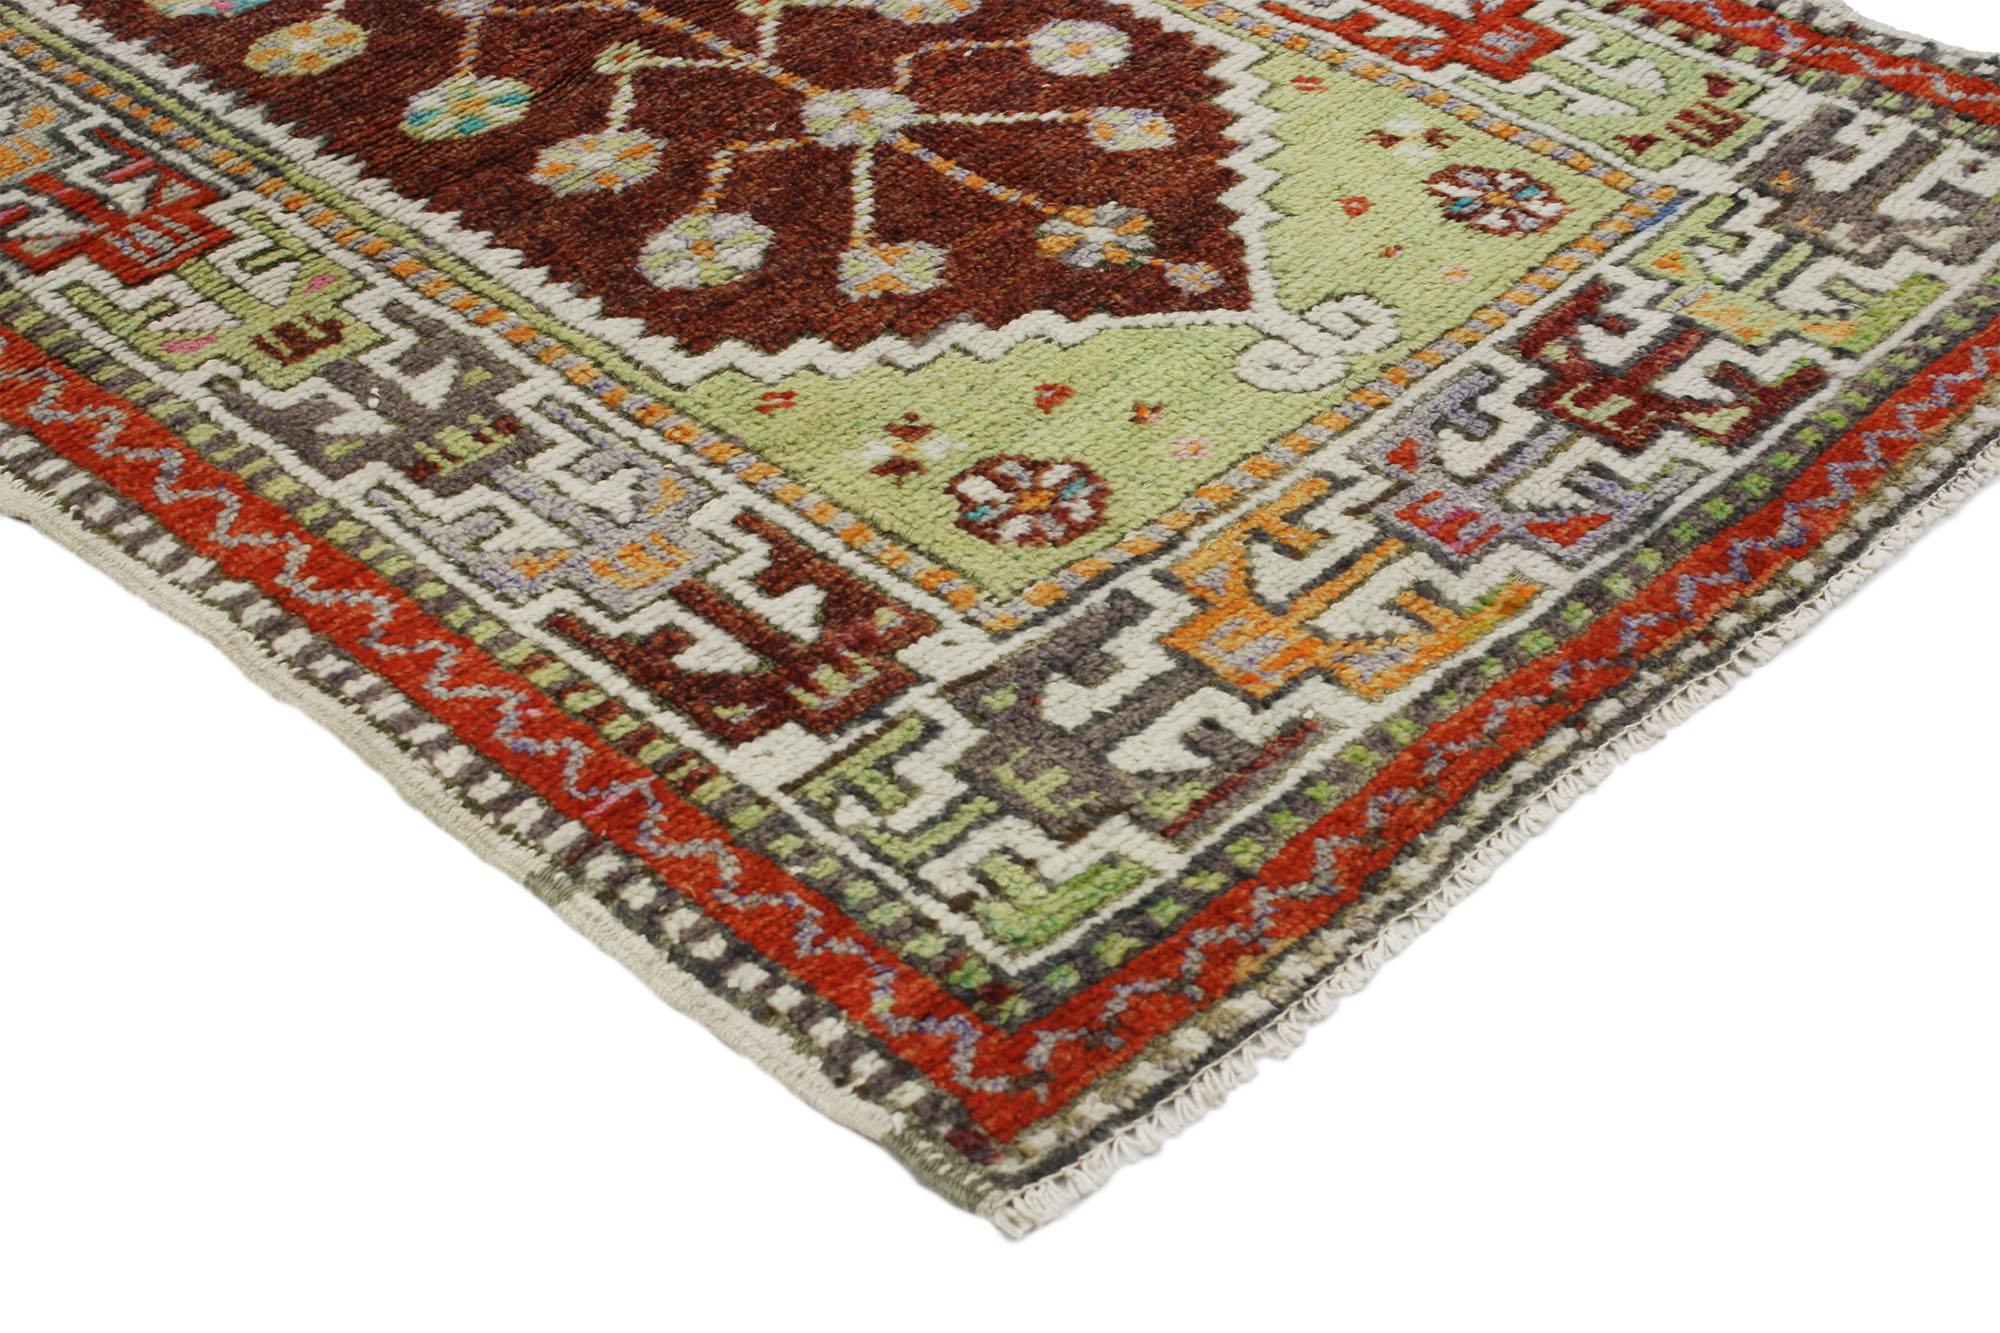 51761 Vintage Turkish Oushak Rug, 02'05 x 04'03.
Dieser farbenfrohe Oushak-Teppich ist eine Mischung aus farbenfrohem Design und skurrilem Boho-Stil. Das auffällige Tribal-Muster und die lebendigen Farben, die in dieses Stück eingewebt sind, sorgen